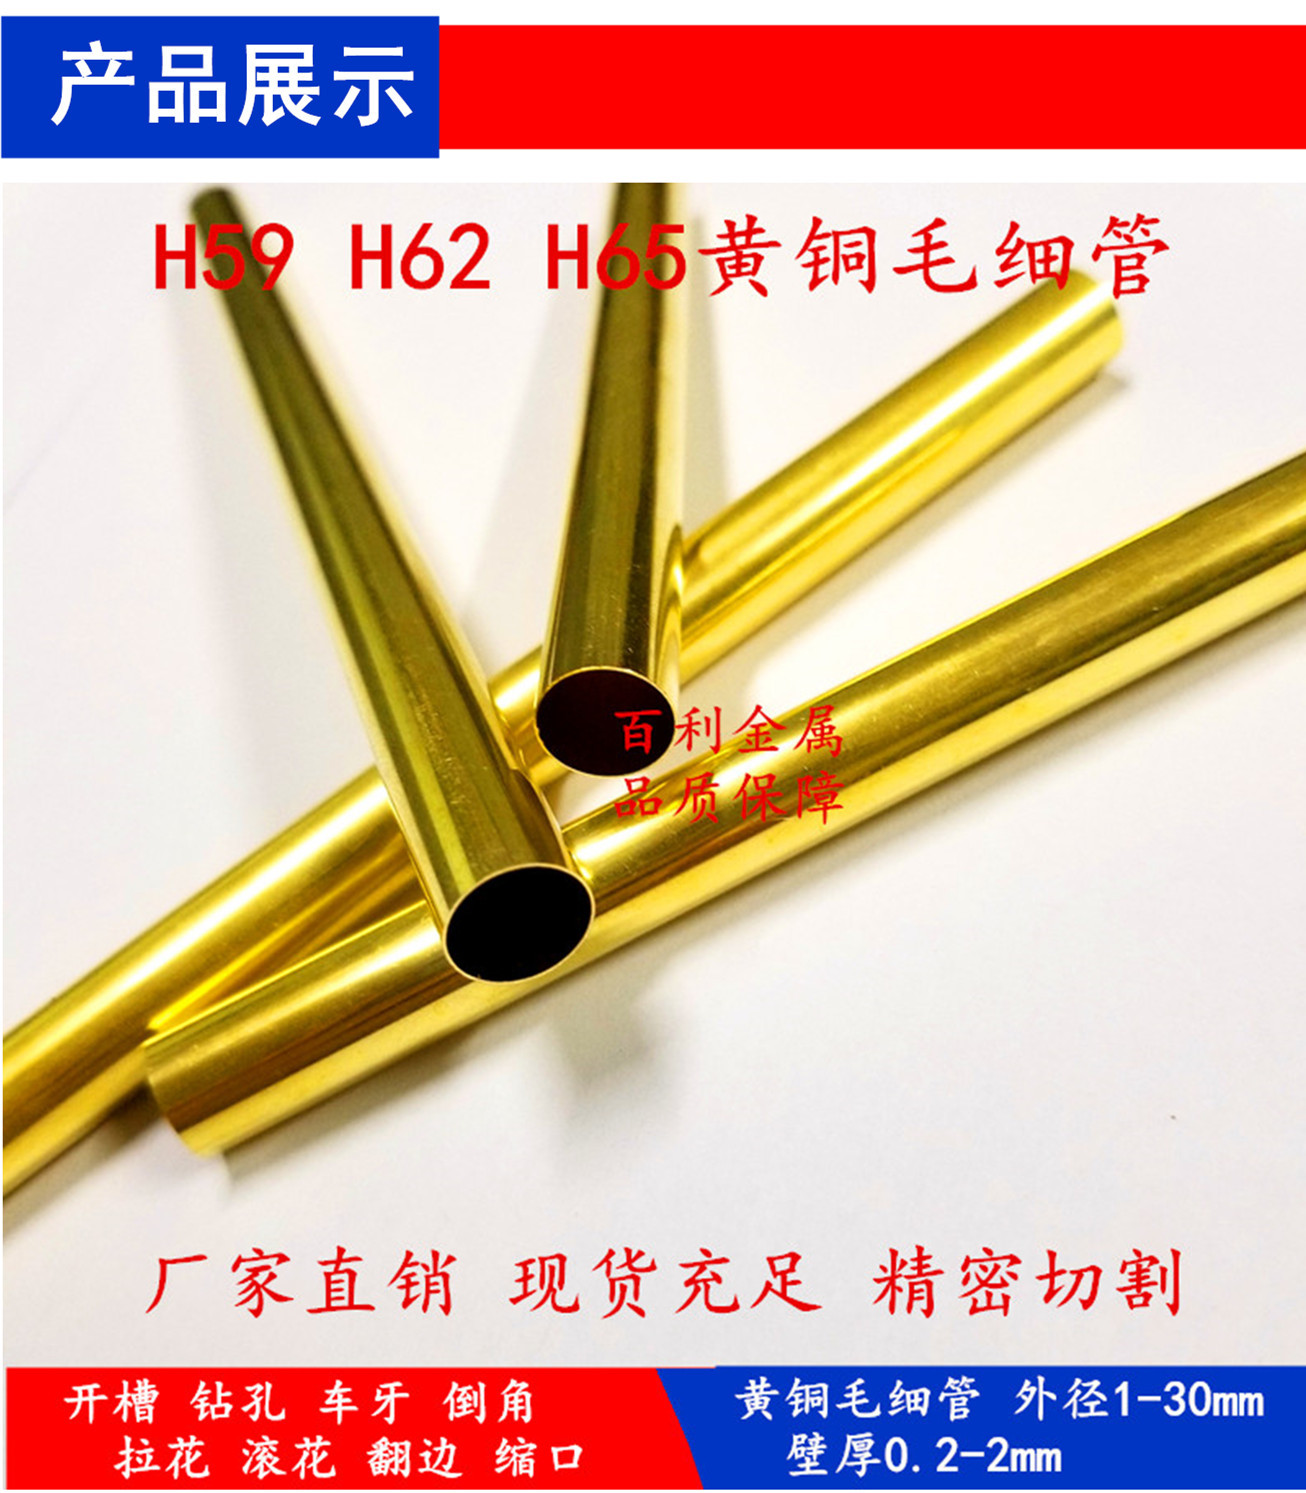 上海H62 H65黄铜毛细管 空心黄铜管 精密黄铜毛细管 薄壁管示例图9